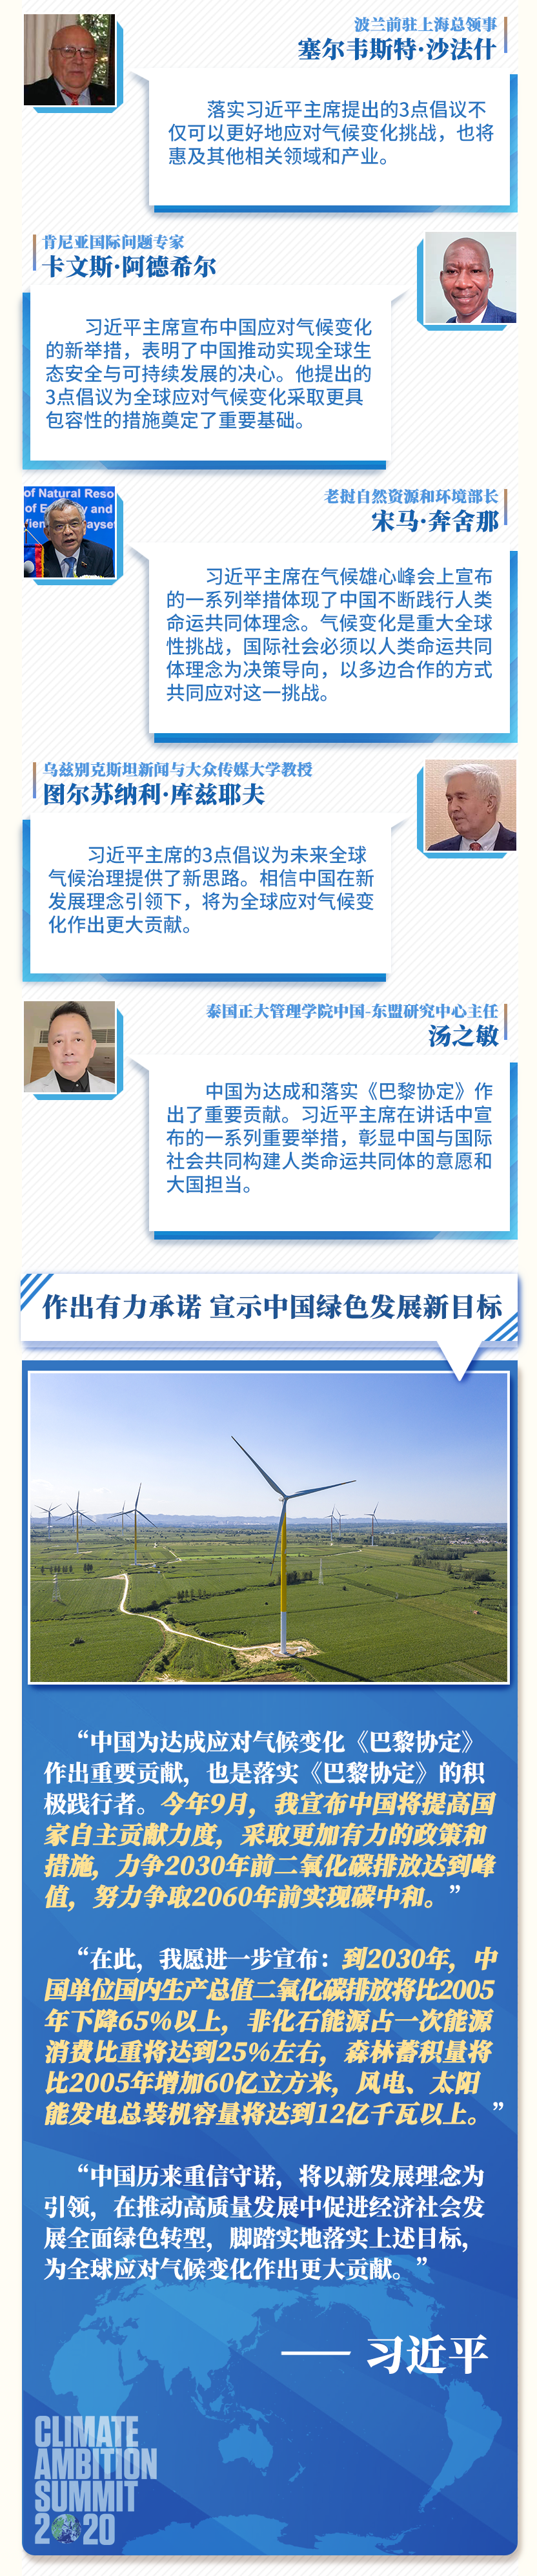 应对气候变化 中国方案赢得广泛赞誉